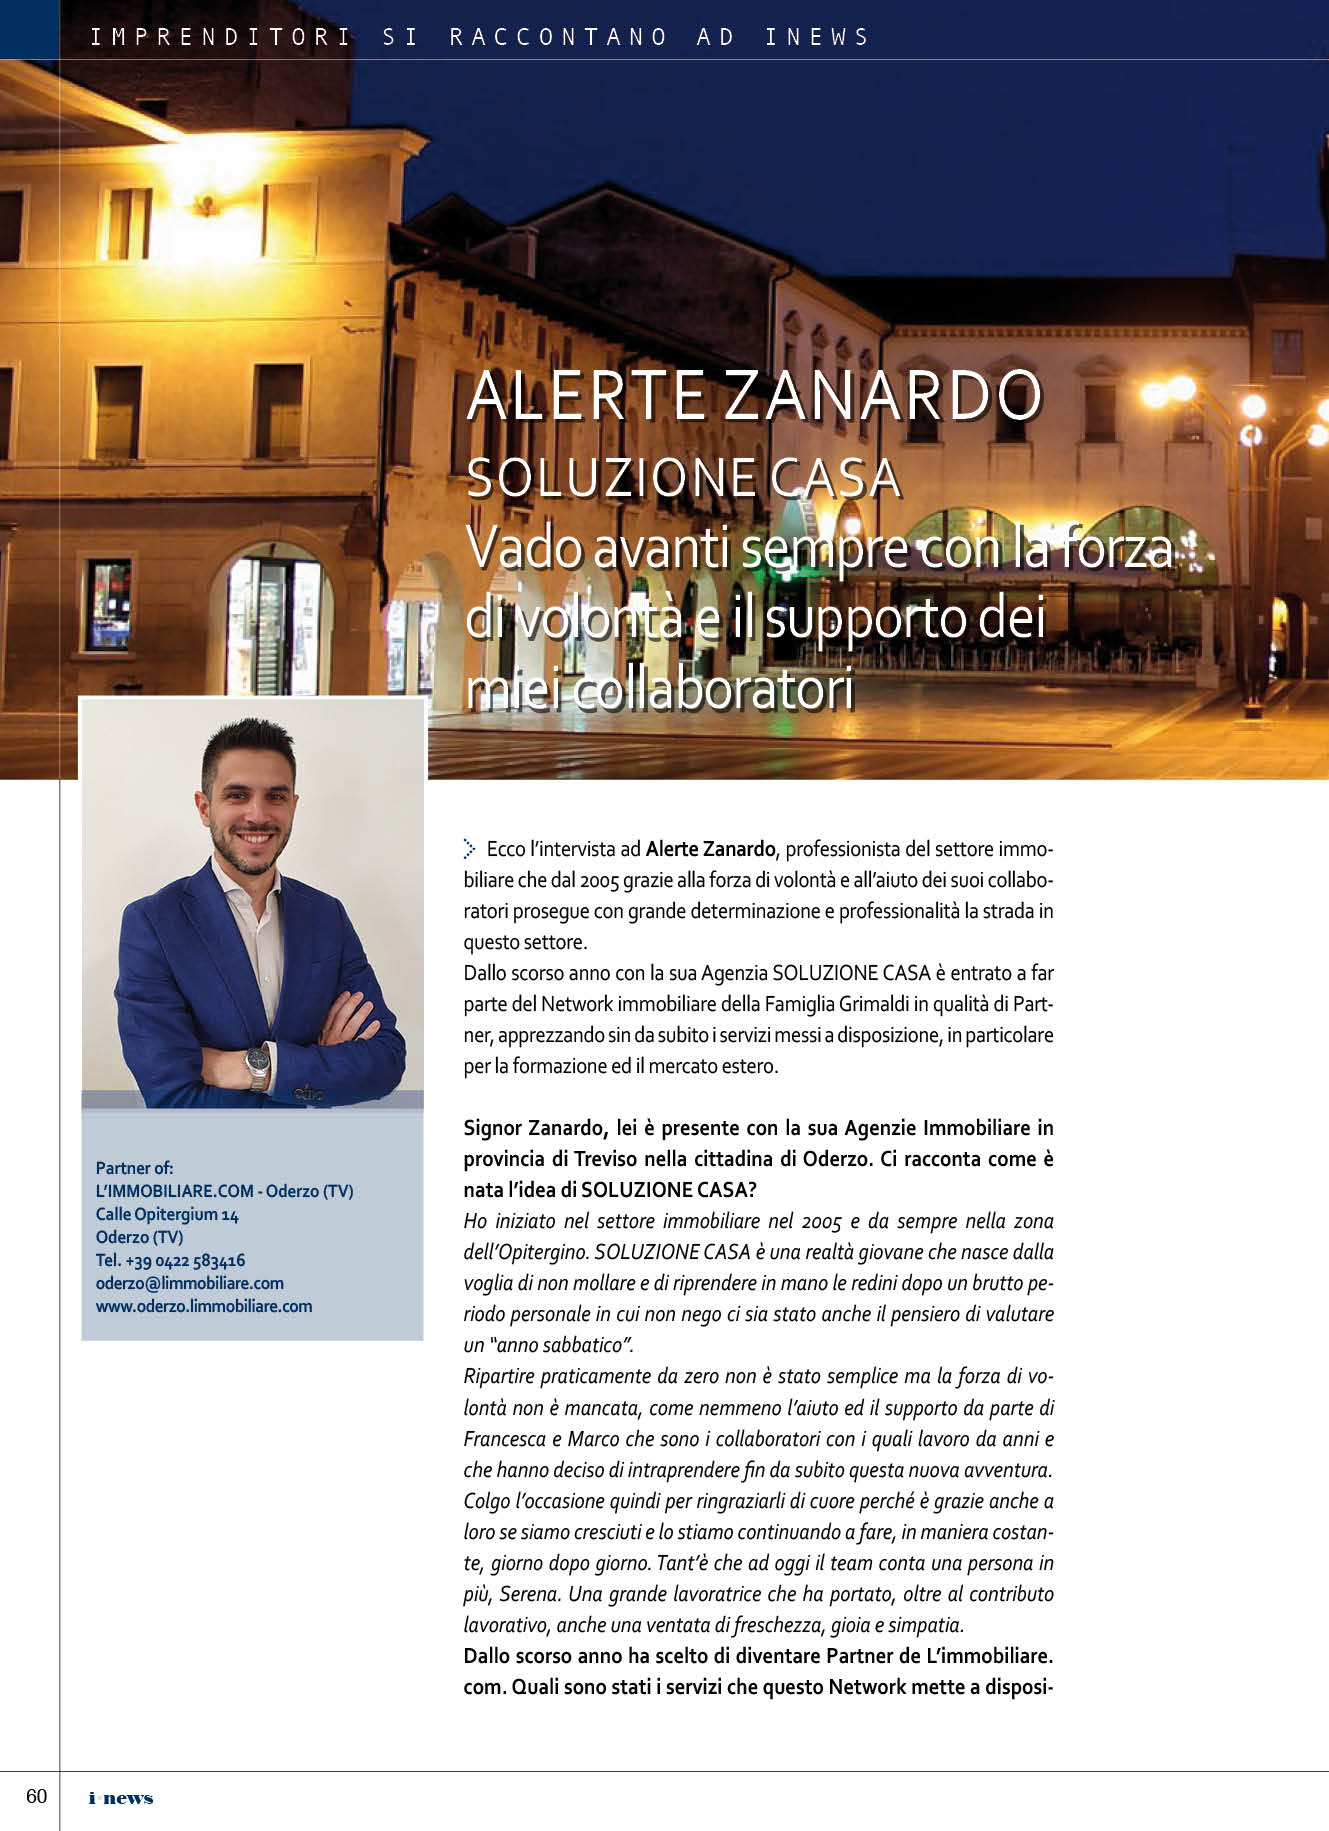 L'immobiliare.com Oderzo Treviso 1